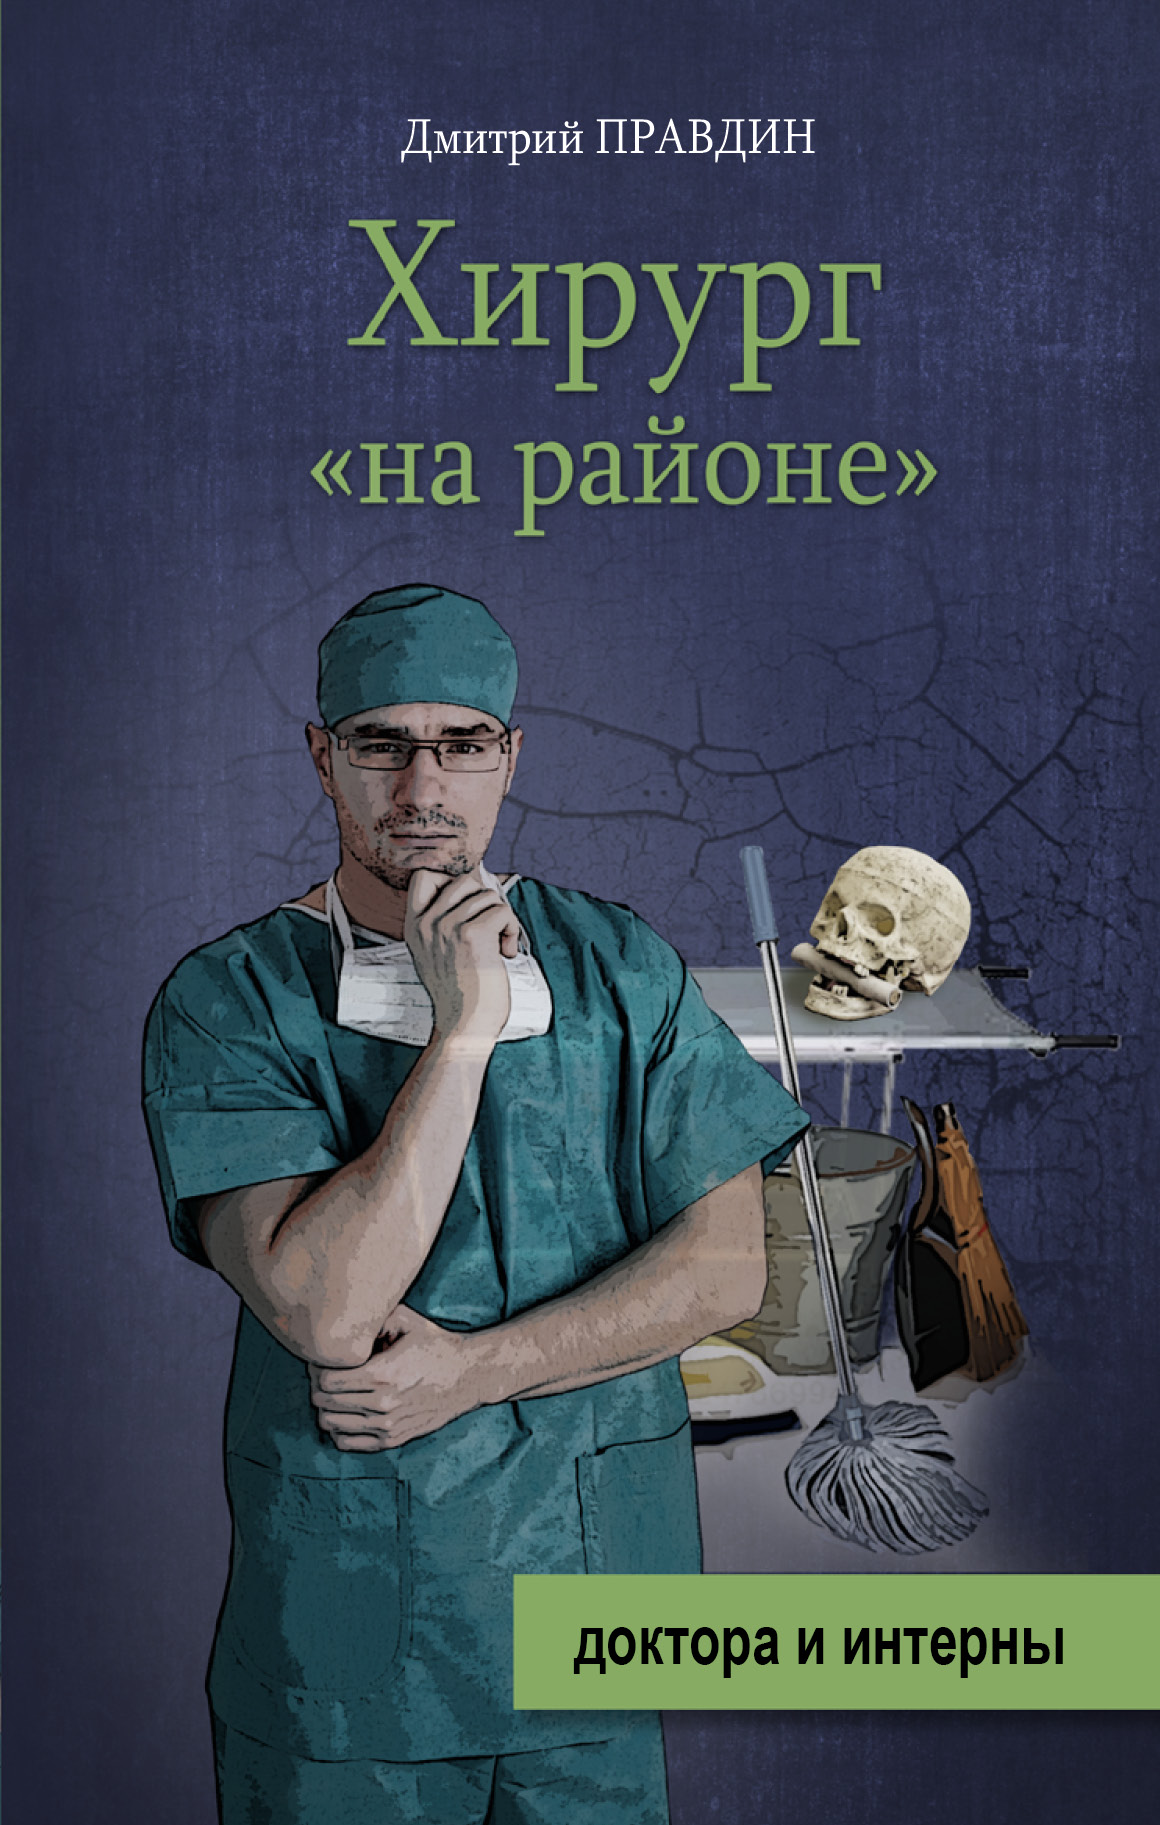 Книга про врачей читать